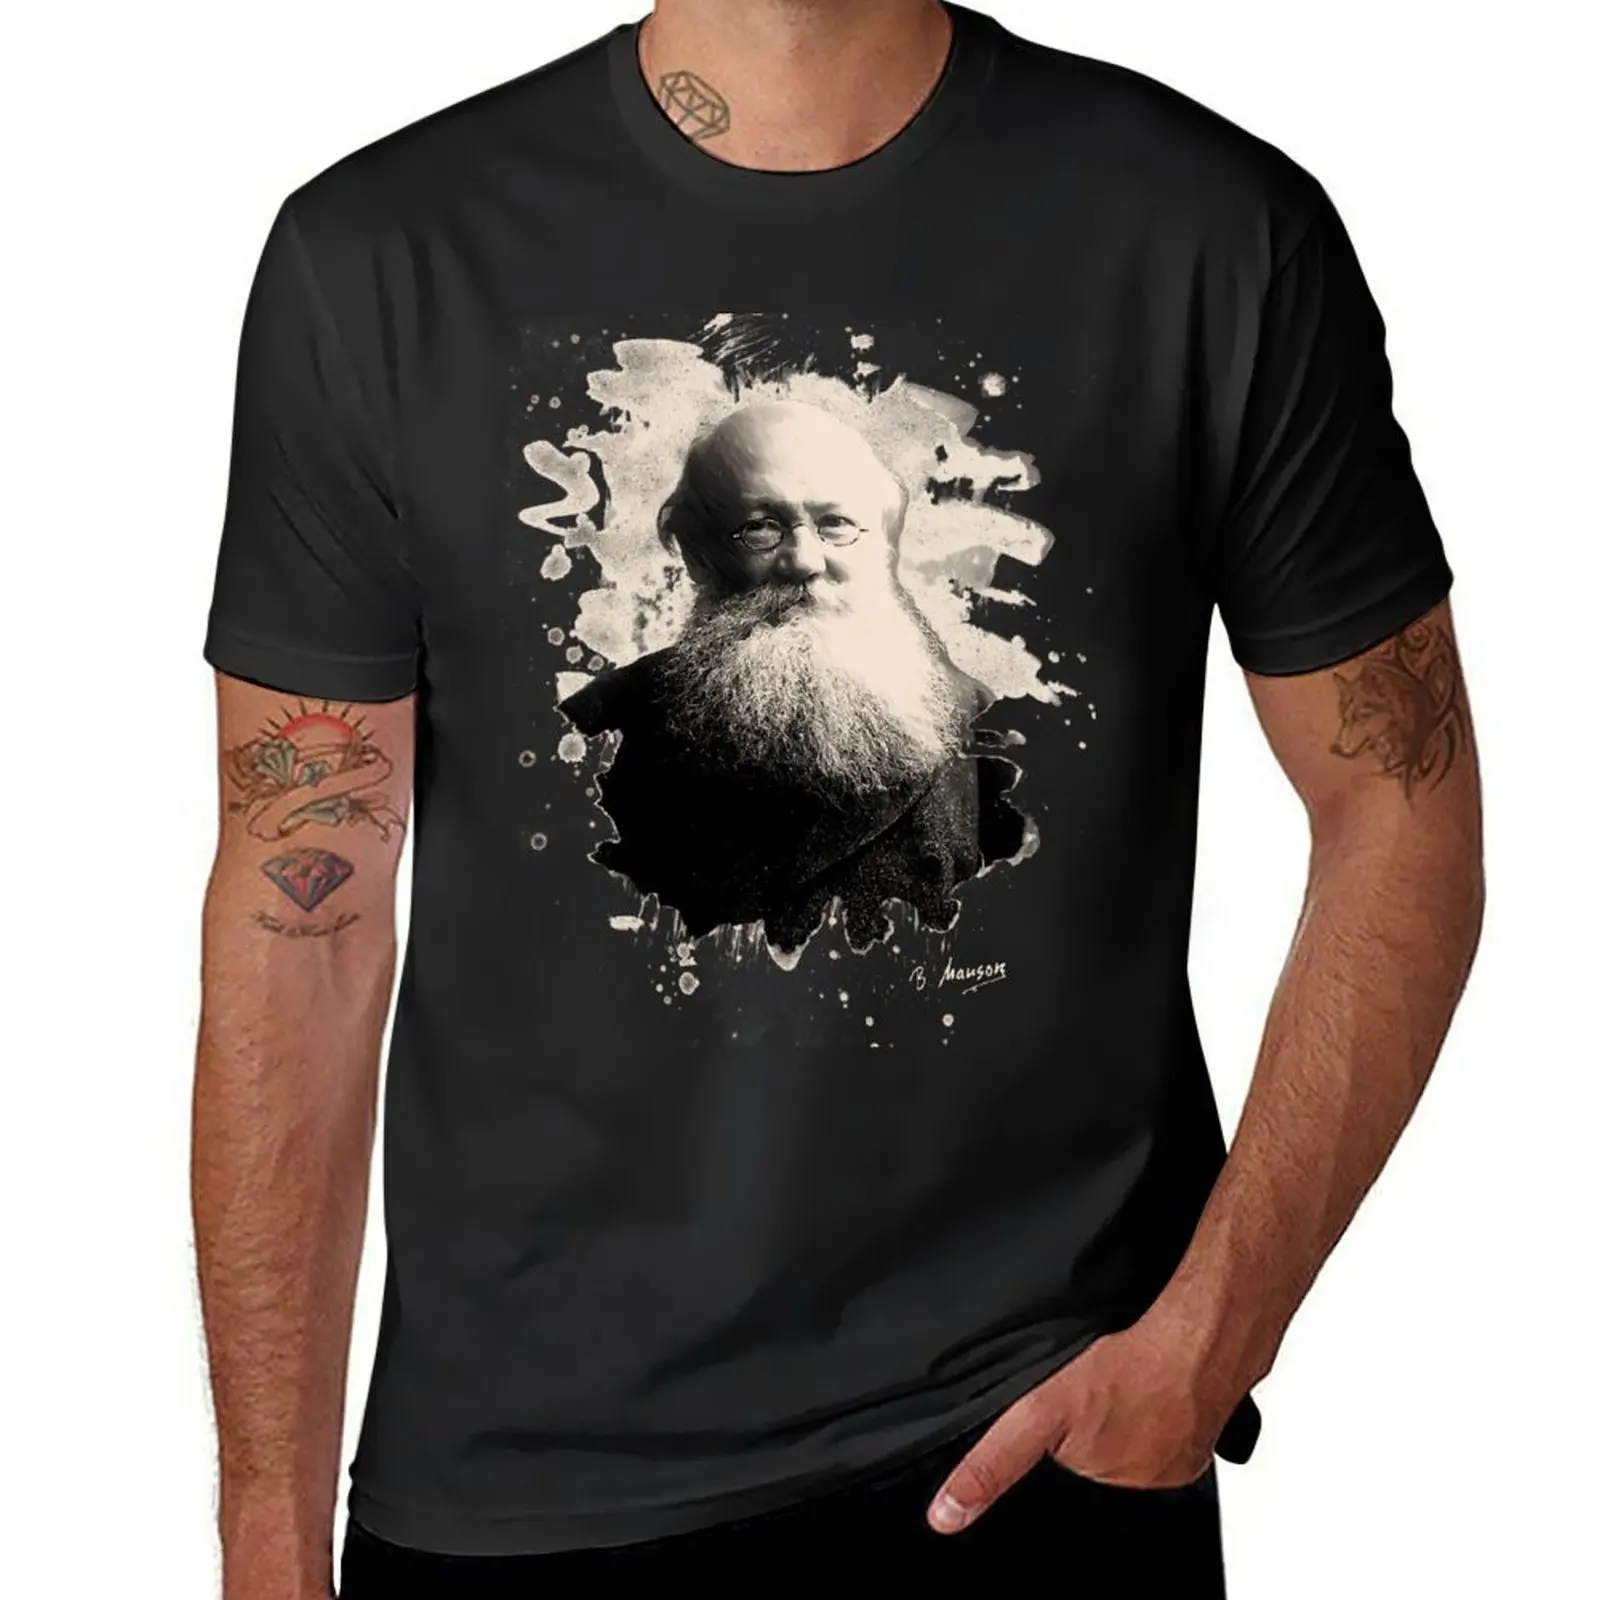 Новая футболка Kropotkin, быстросохнущая футболка, короткая футболка, одежда kawaii, мужские футболки с графическим рисунком. Изображение 0